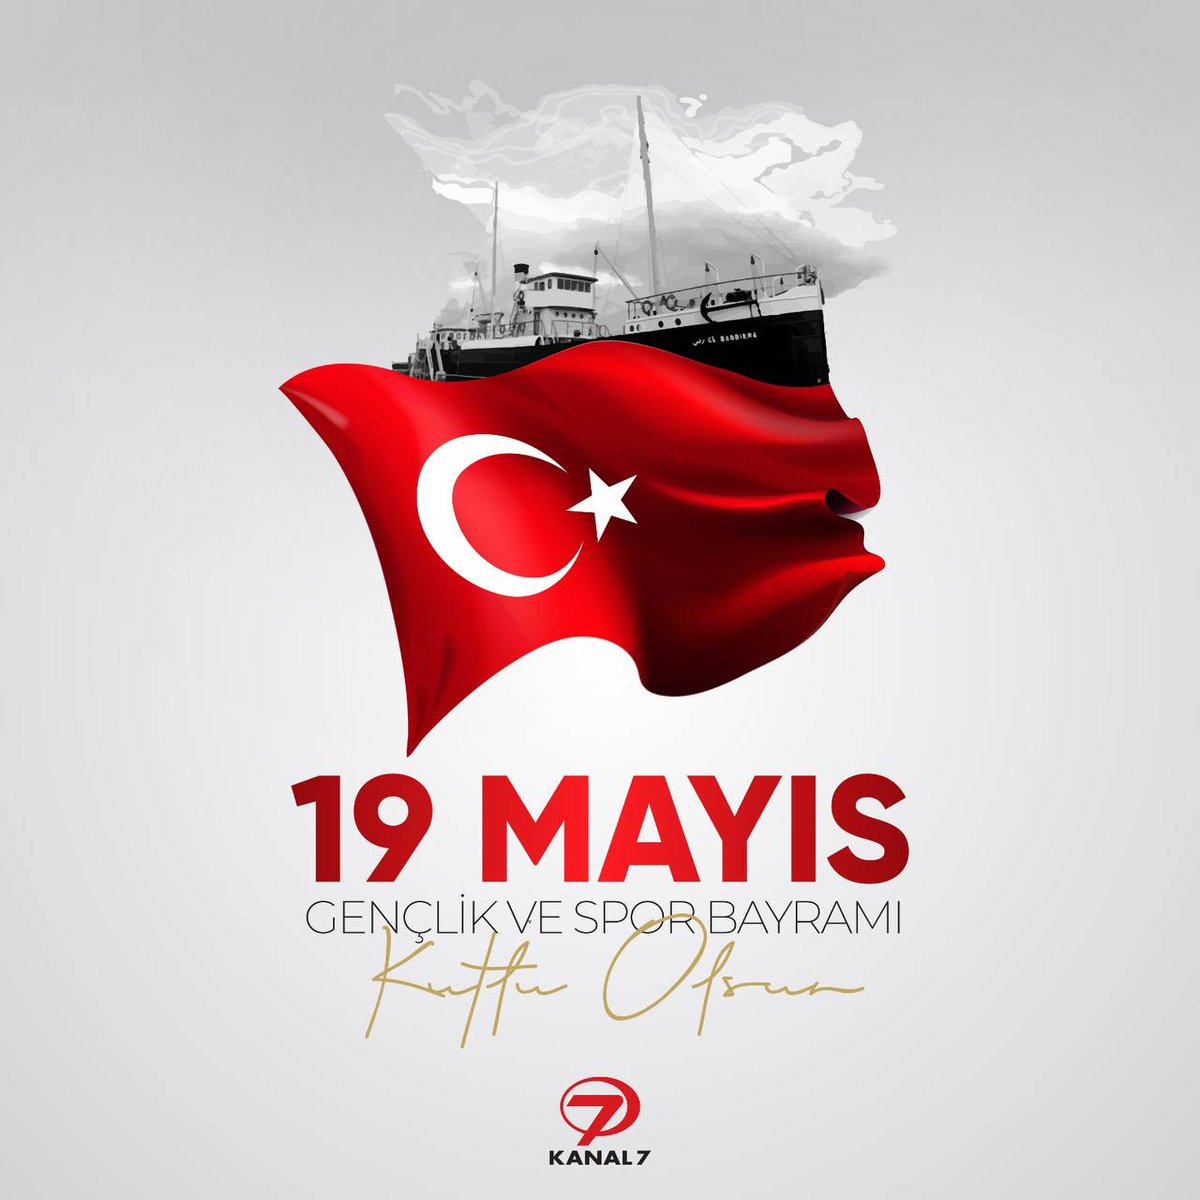 Kurtuluş savaşının başlangıcı ve Türk gençliğinin sembolü 19 Mayıs Atatürk'ü Anma, Gençlik ve Spor Bayramı'nı kutlarız. 🇹🇷🇹🇷 #19mayıs #kurtuluşsavaşı #gençlikvesporbayramı #kanal7 #bayram